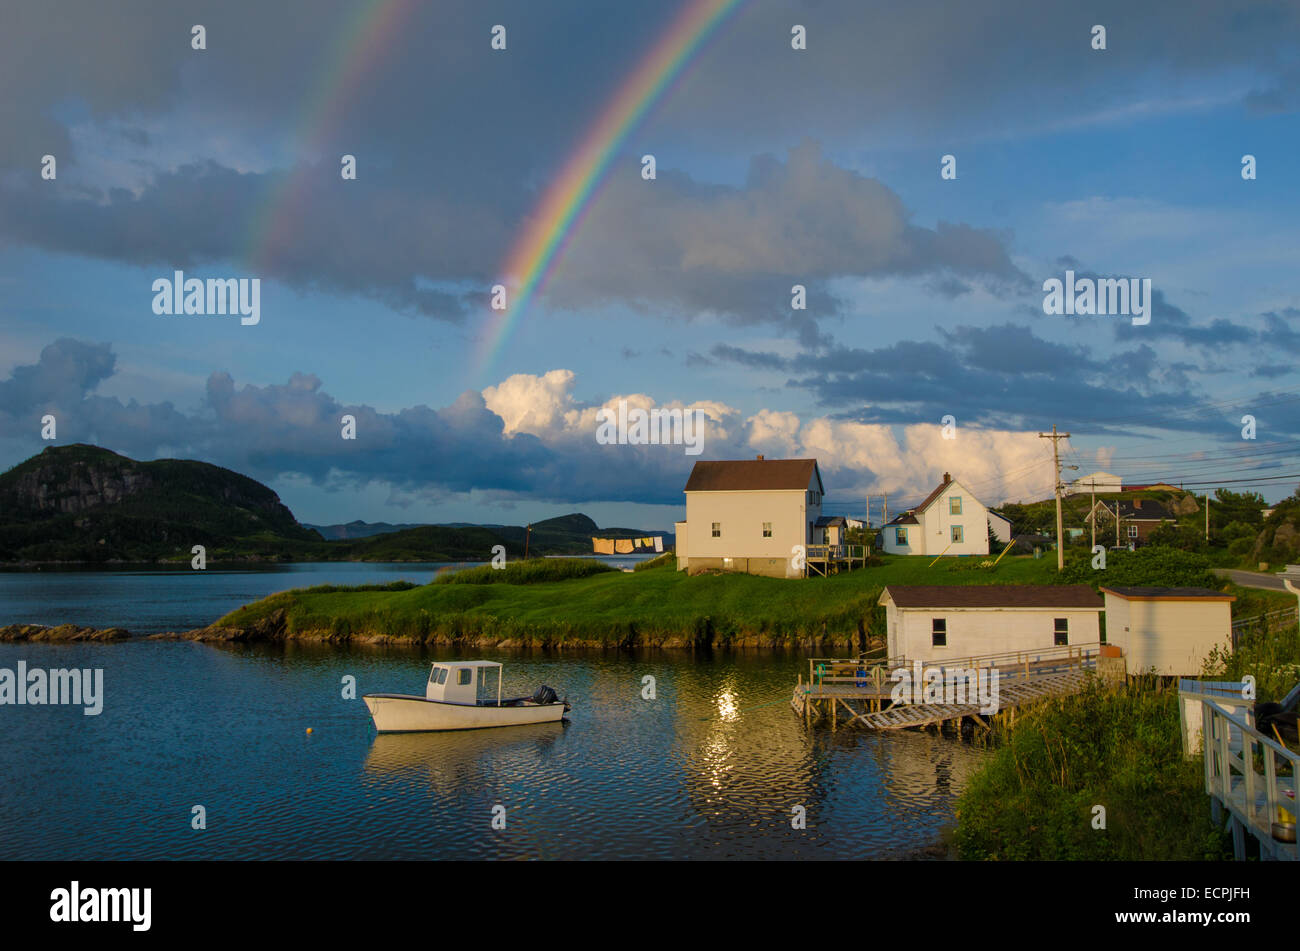 Doble choza fotografías e imágenes de alta resolución - Alamy